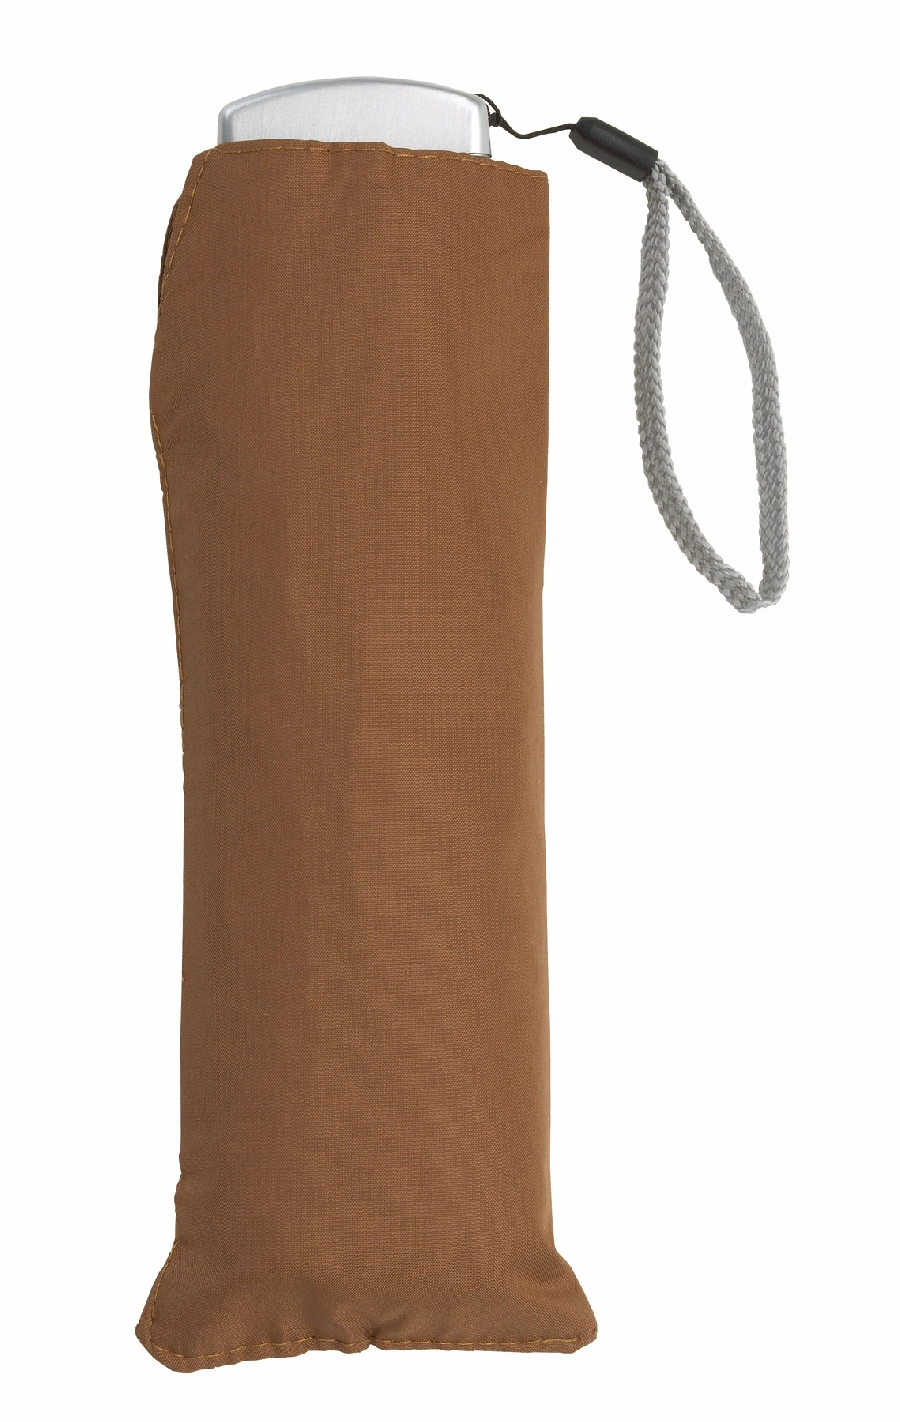 Super płaski parasol składany FLAT, brązowy 56-0101145 brązowy